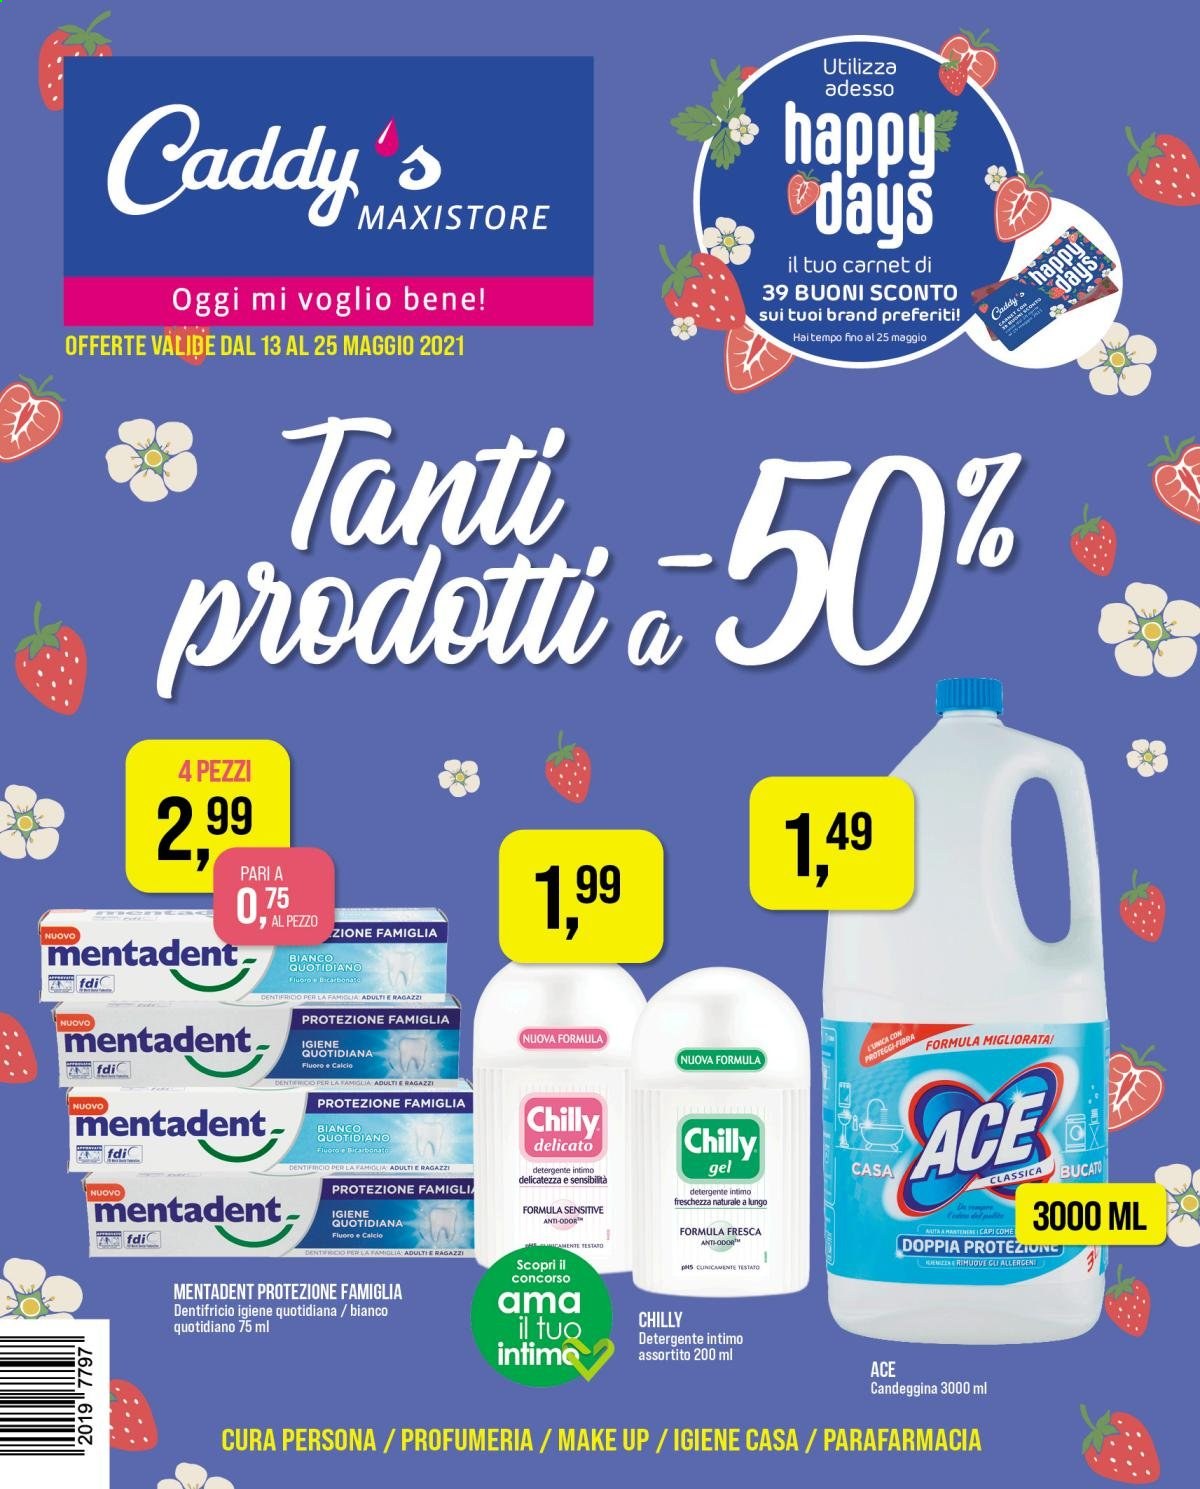 thumbnail - Volantino Caddy's Maxistore - 13/5/2021 - 25/5/2021 - Prodotti in offerta - Chilly, candeggina, detergente, Ace, detergente intimo, dentifricio, Mentadent. Pagina 1.